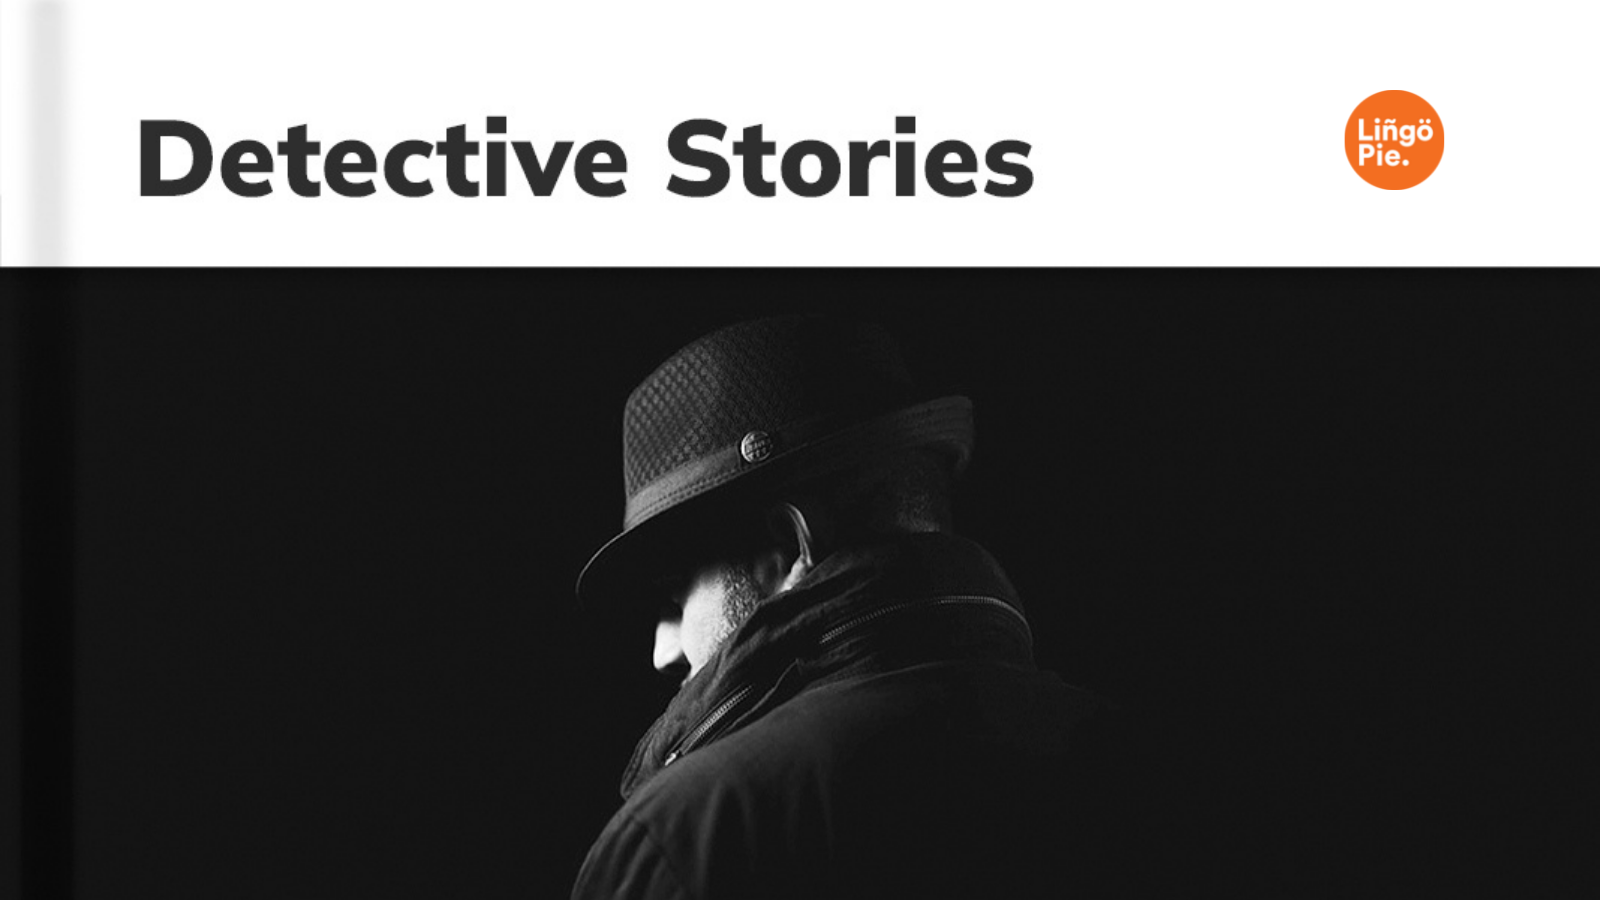 Detective Stories on Lingopie.